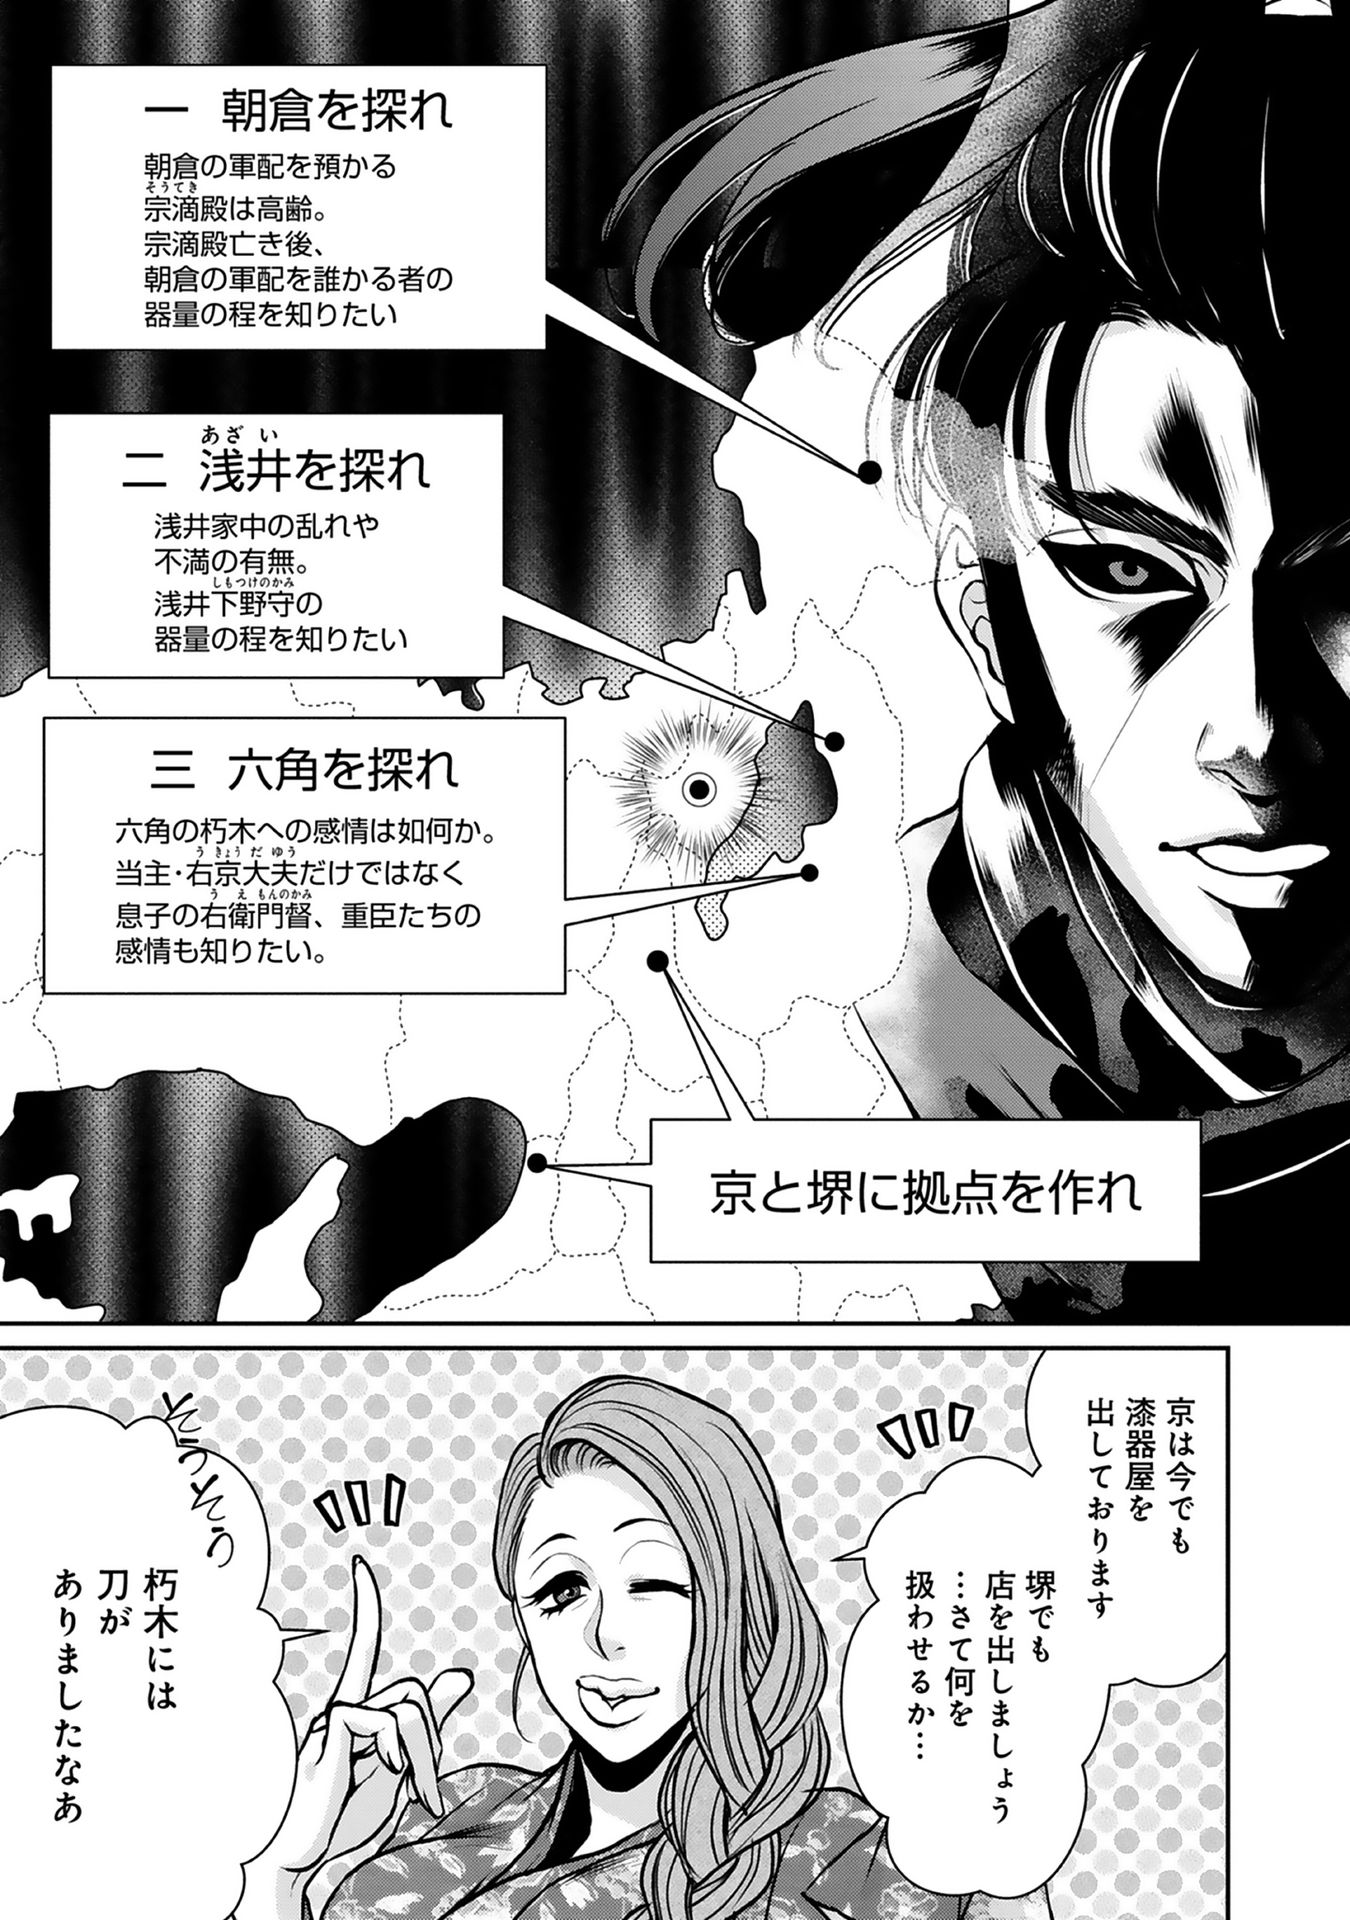 Afumi no Umi – Minamo ga Yureru Toki - Chapter 4 - Page 10